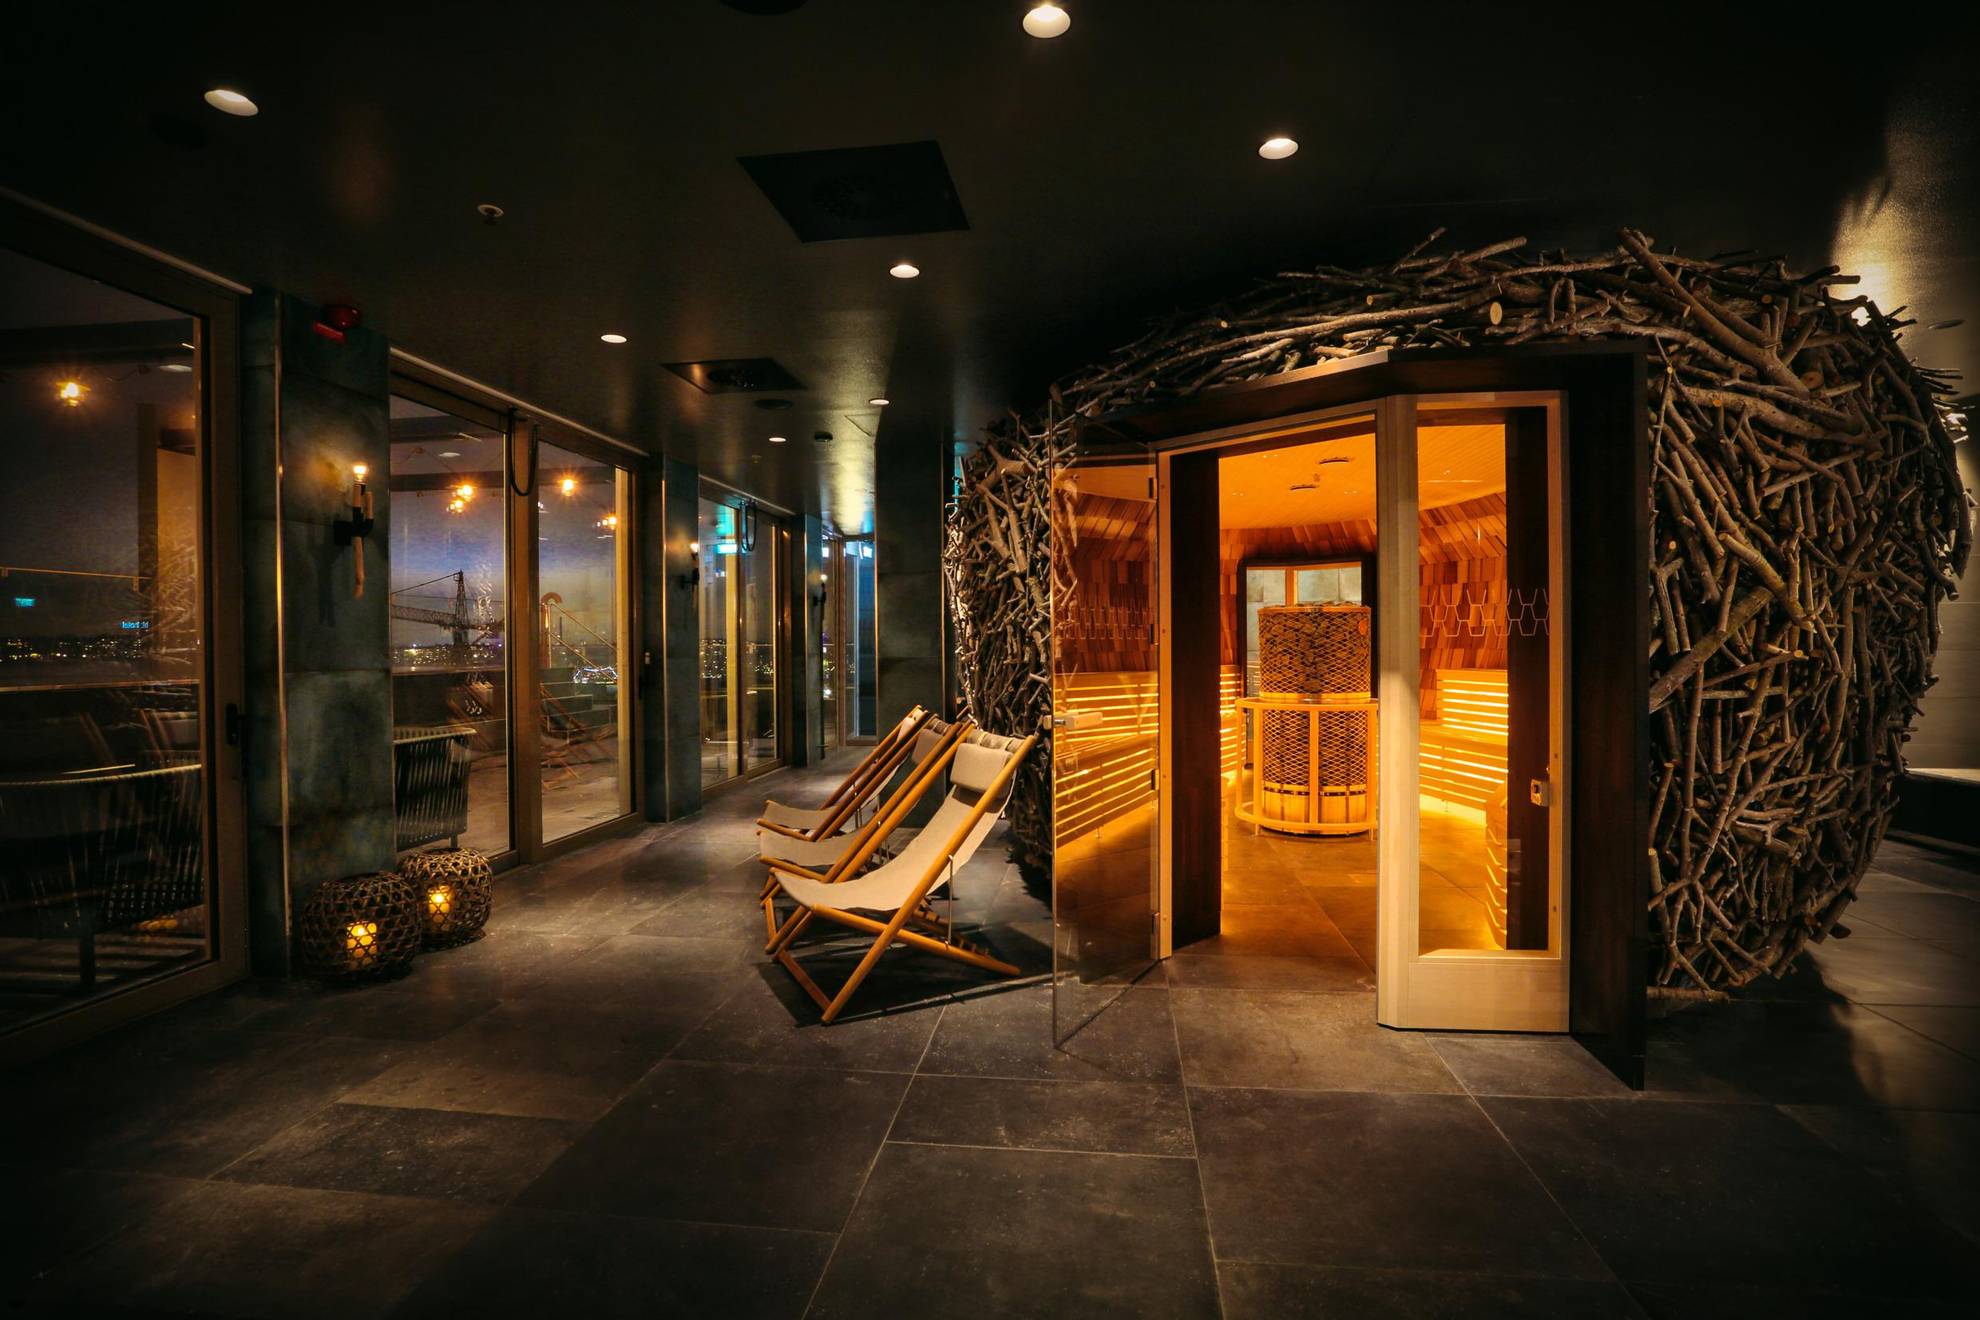 Un sauna ressemblant à un nid d'oiseau est situé au centre d'une pièce peu éclairée. On peut voir trois chaises longues juste à côté du sauna.